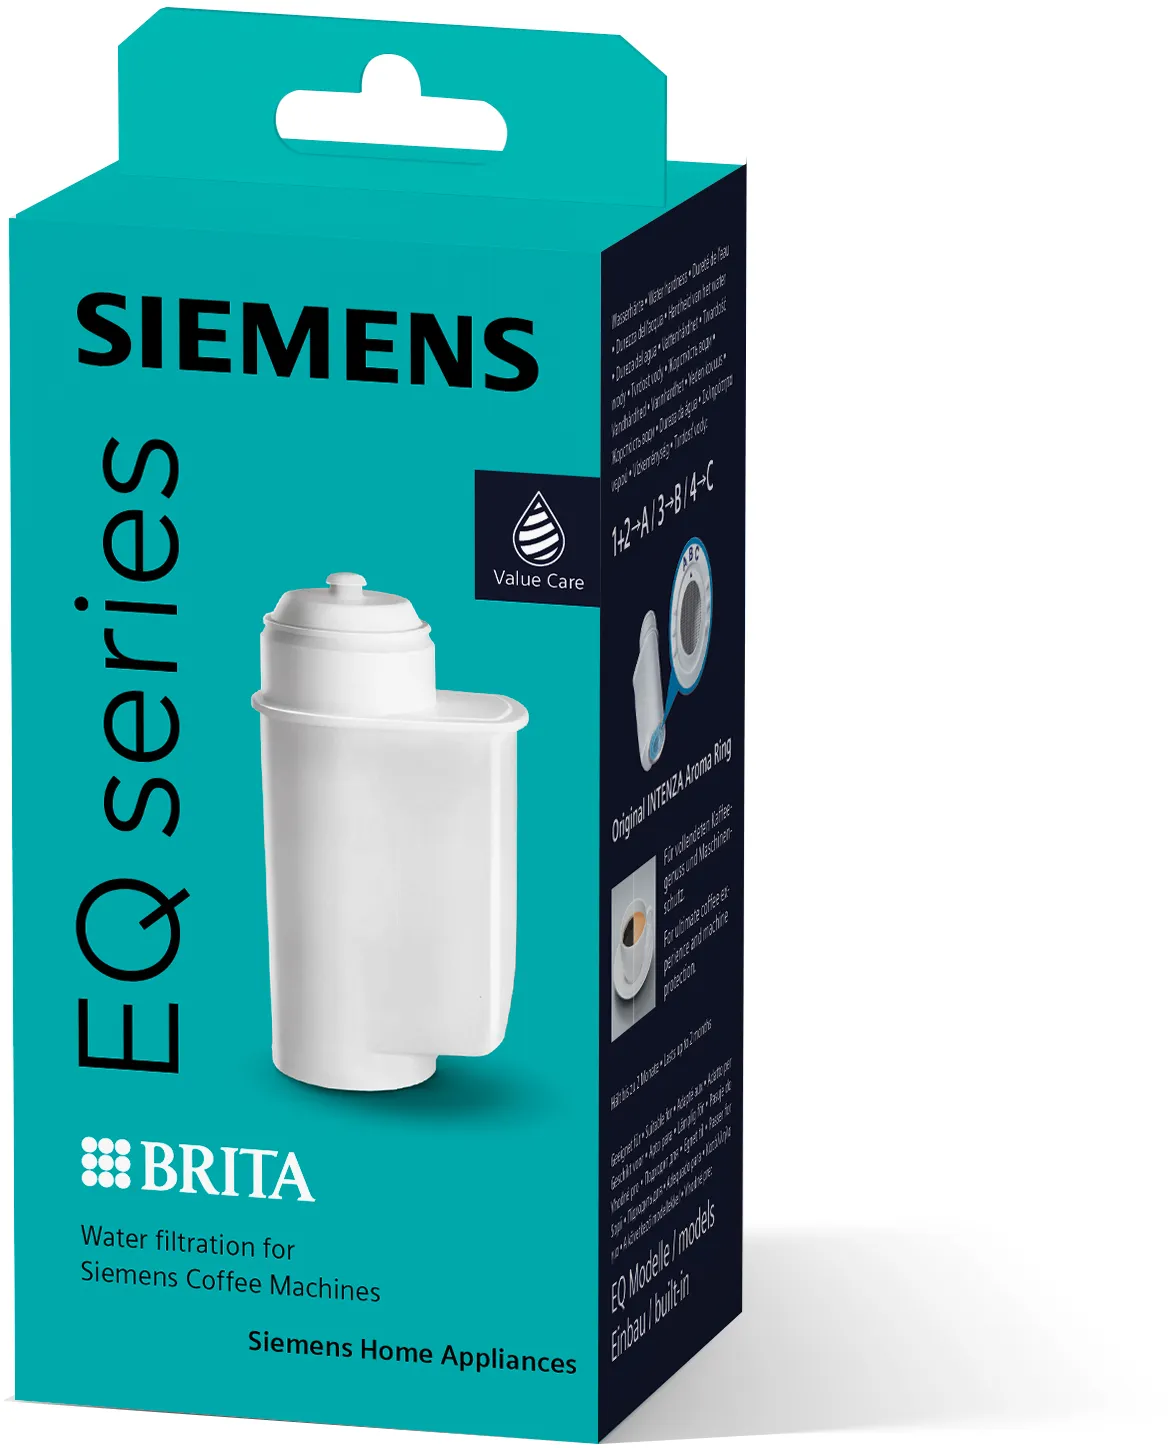 Wasserfilter BRITA Intenza für Kaffeevollautomaten, Siemens-Verpackung Inhalt: 1x Wasserfilter 